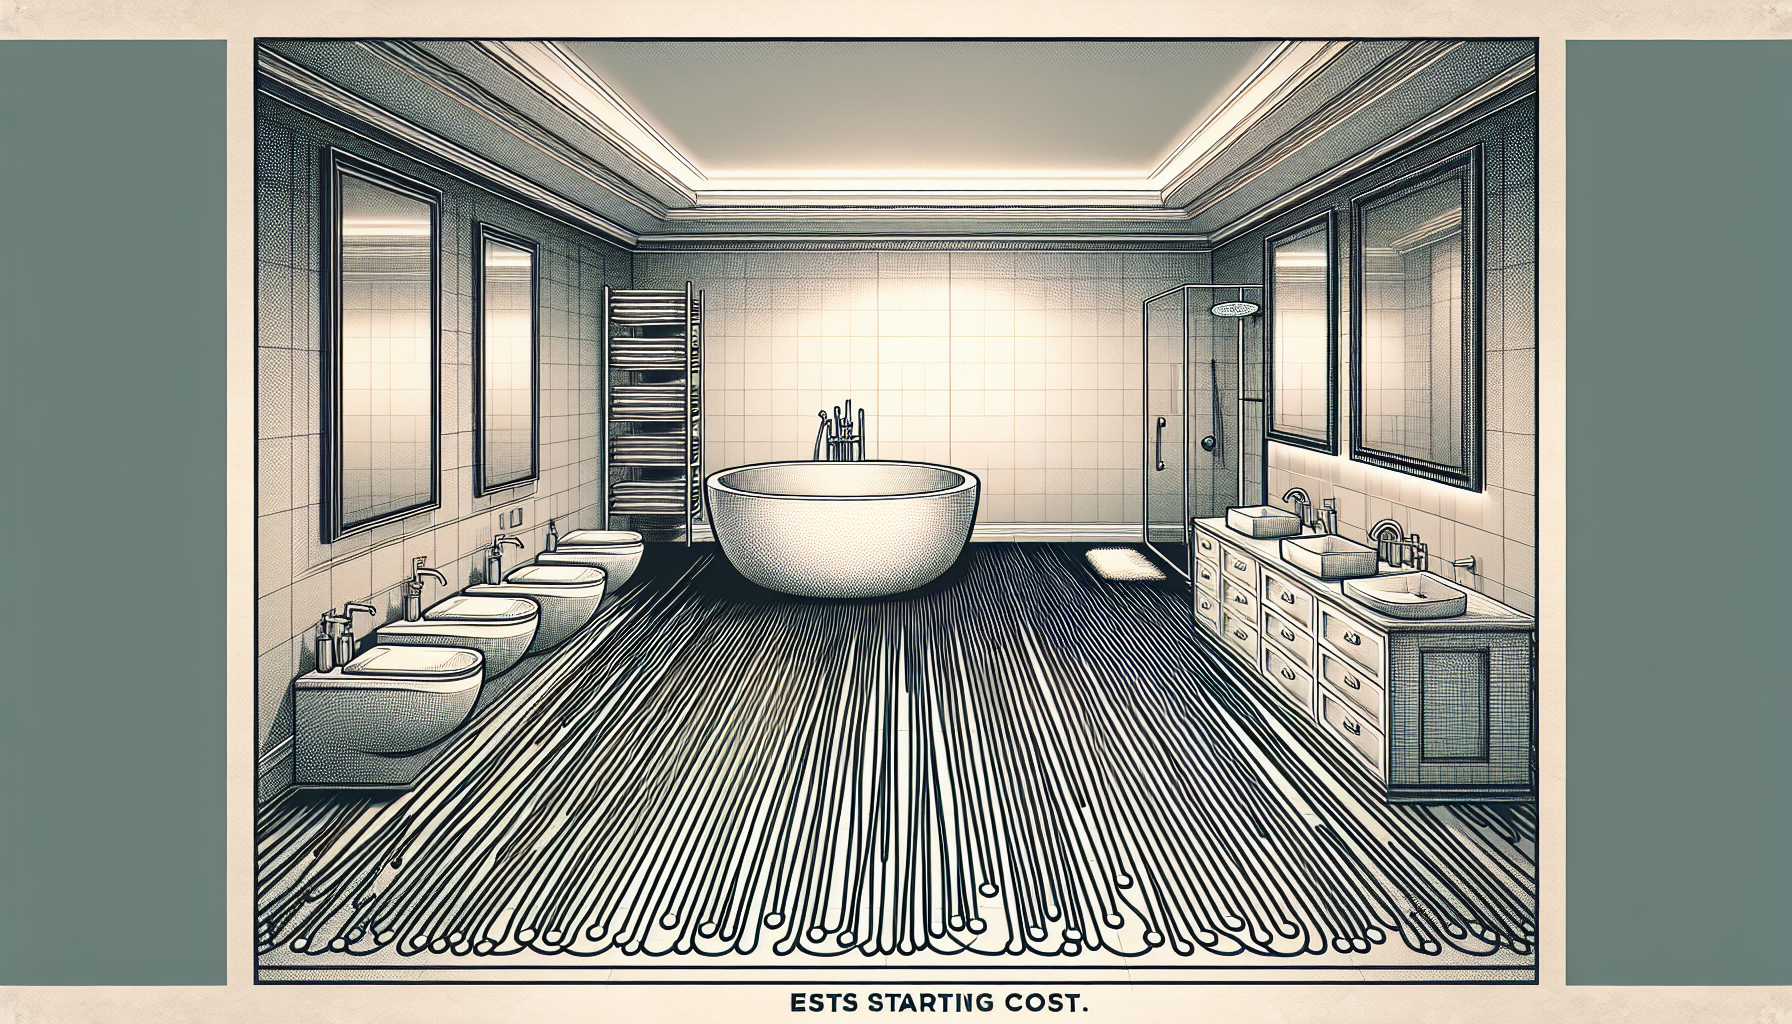 Illustration eines großen Badezimmers mit vielfältigen Gestaltungsmöglichkeiten